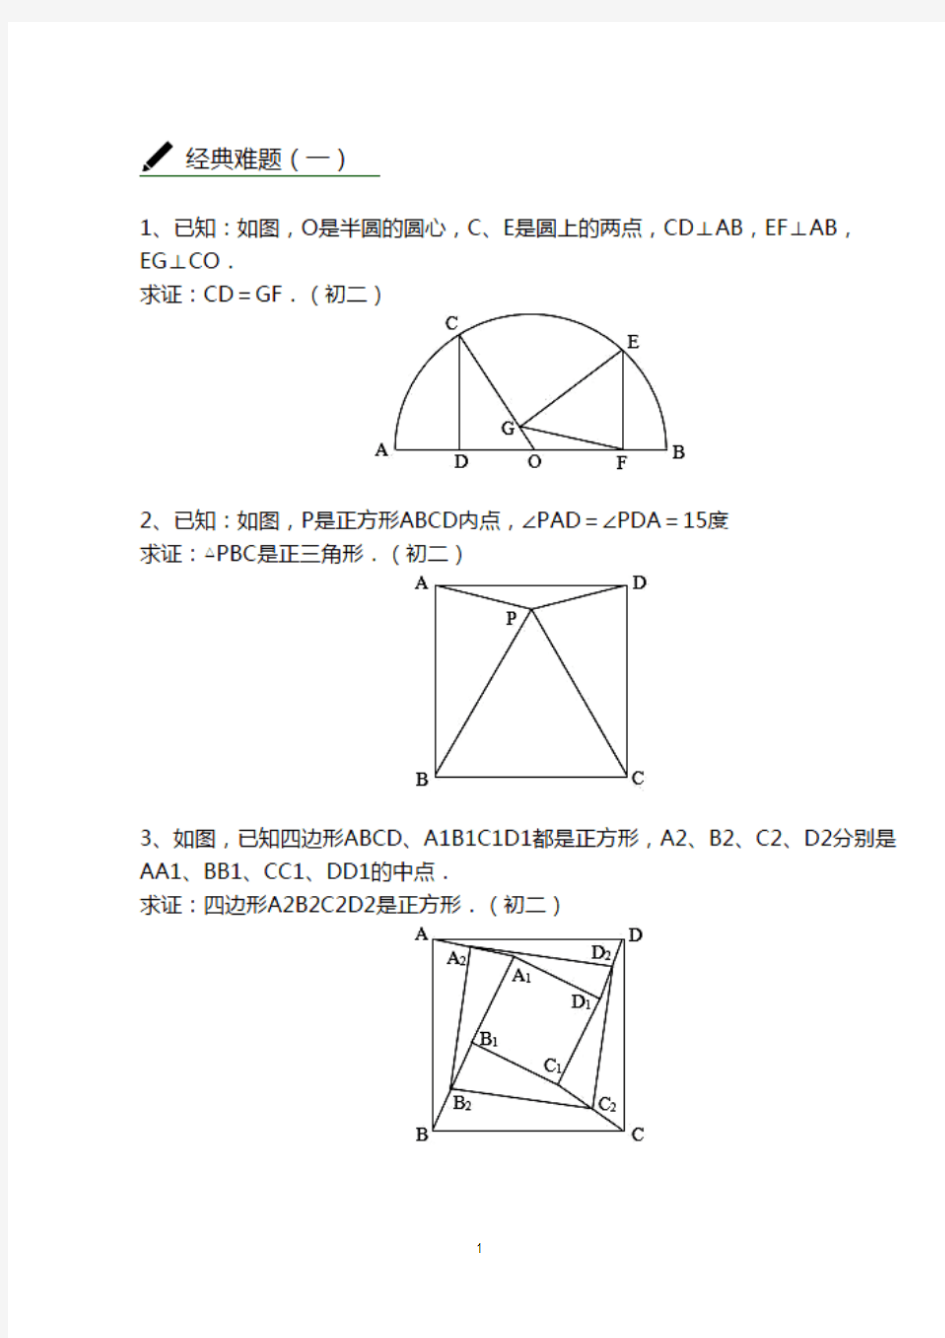 新版初中数学证明题经典难题集锦-新版.pdf